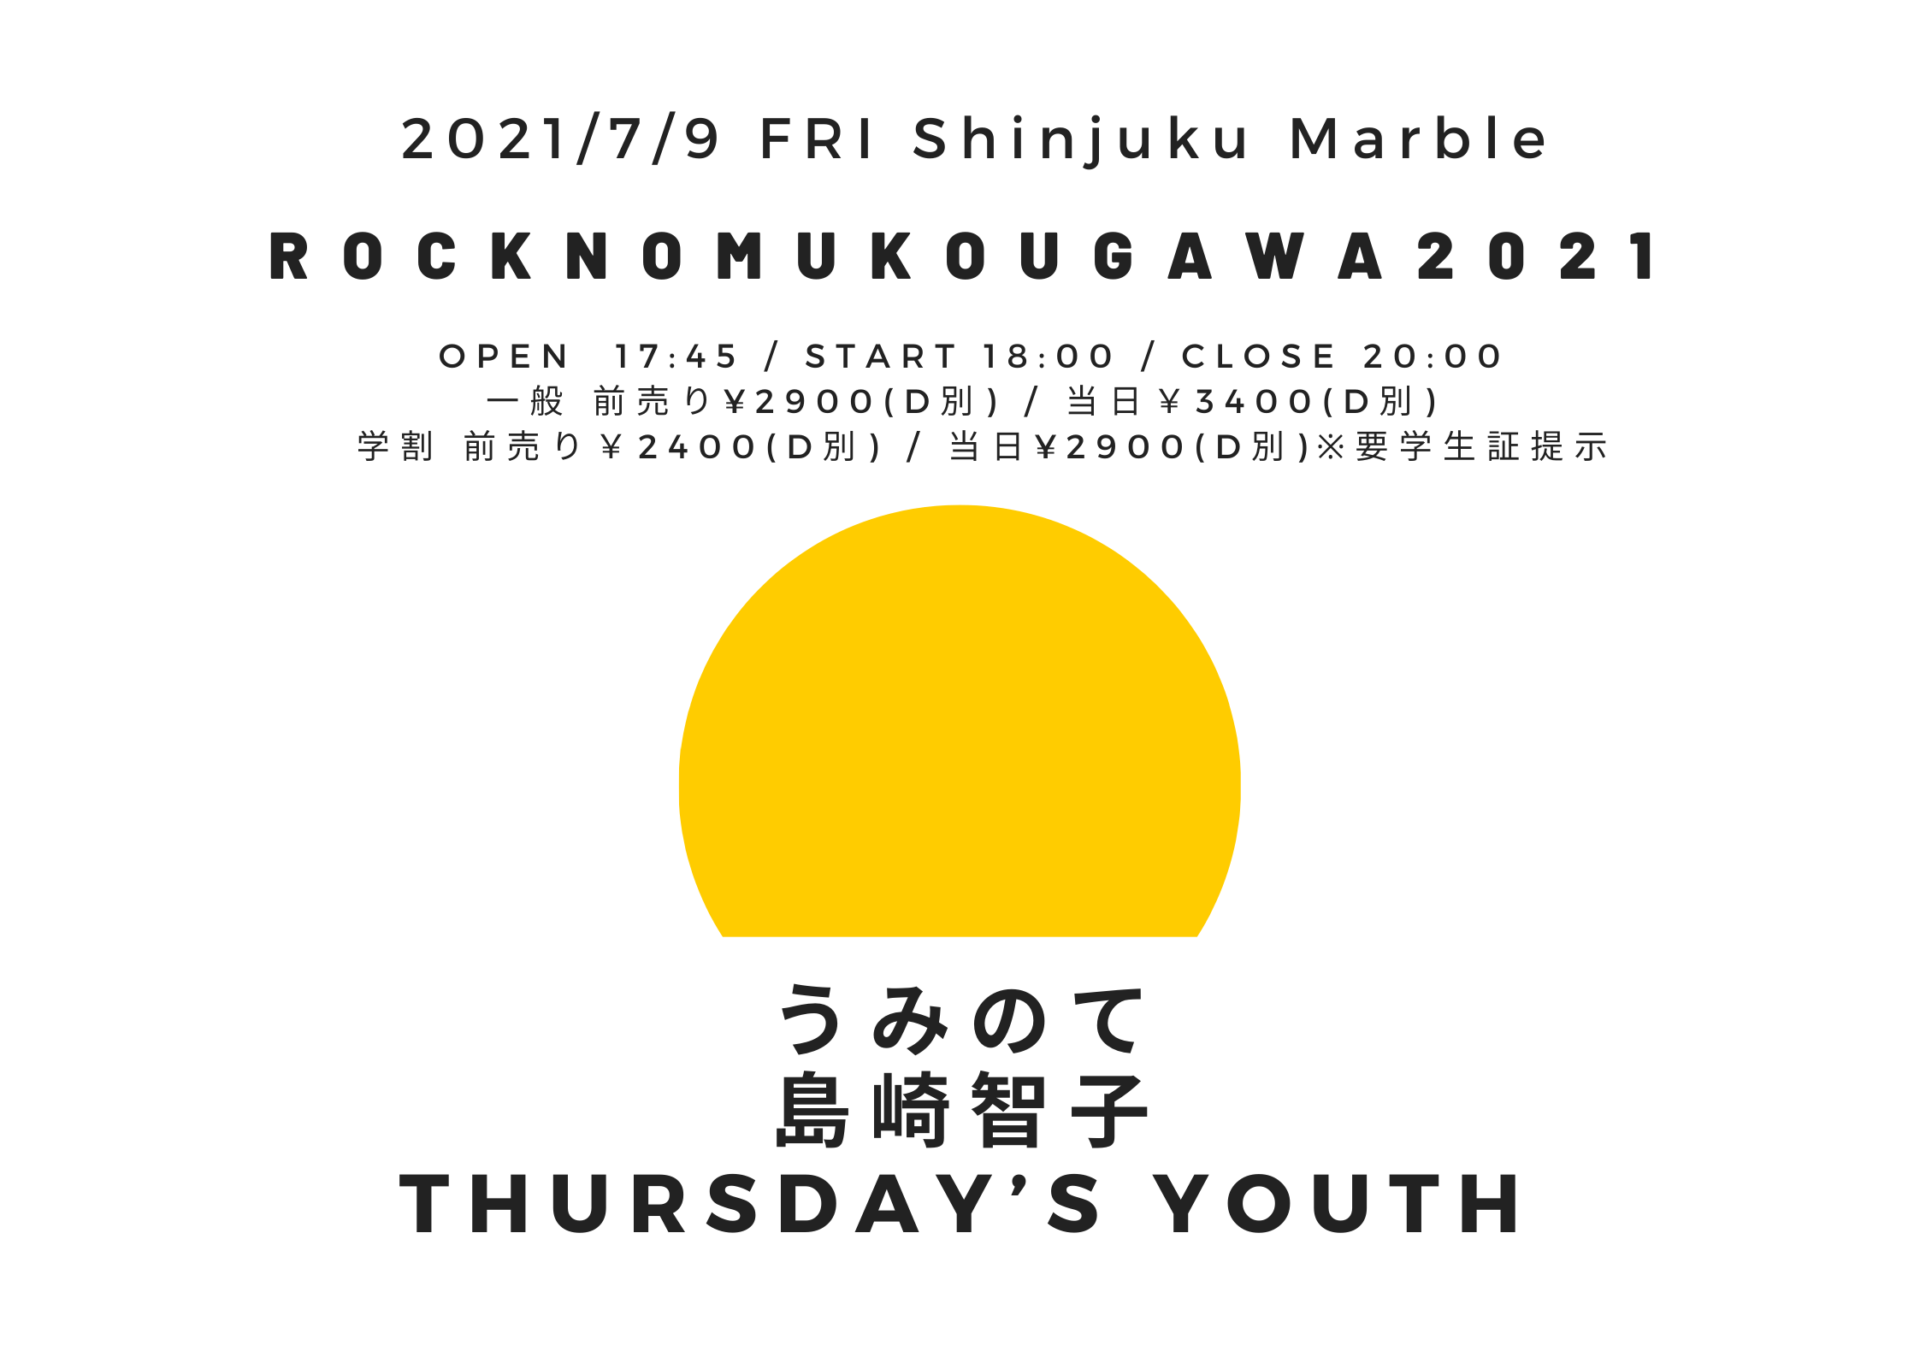 ROCKNOMUKOUGAWA2021